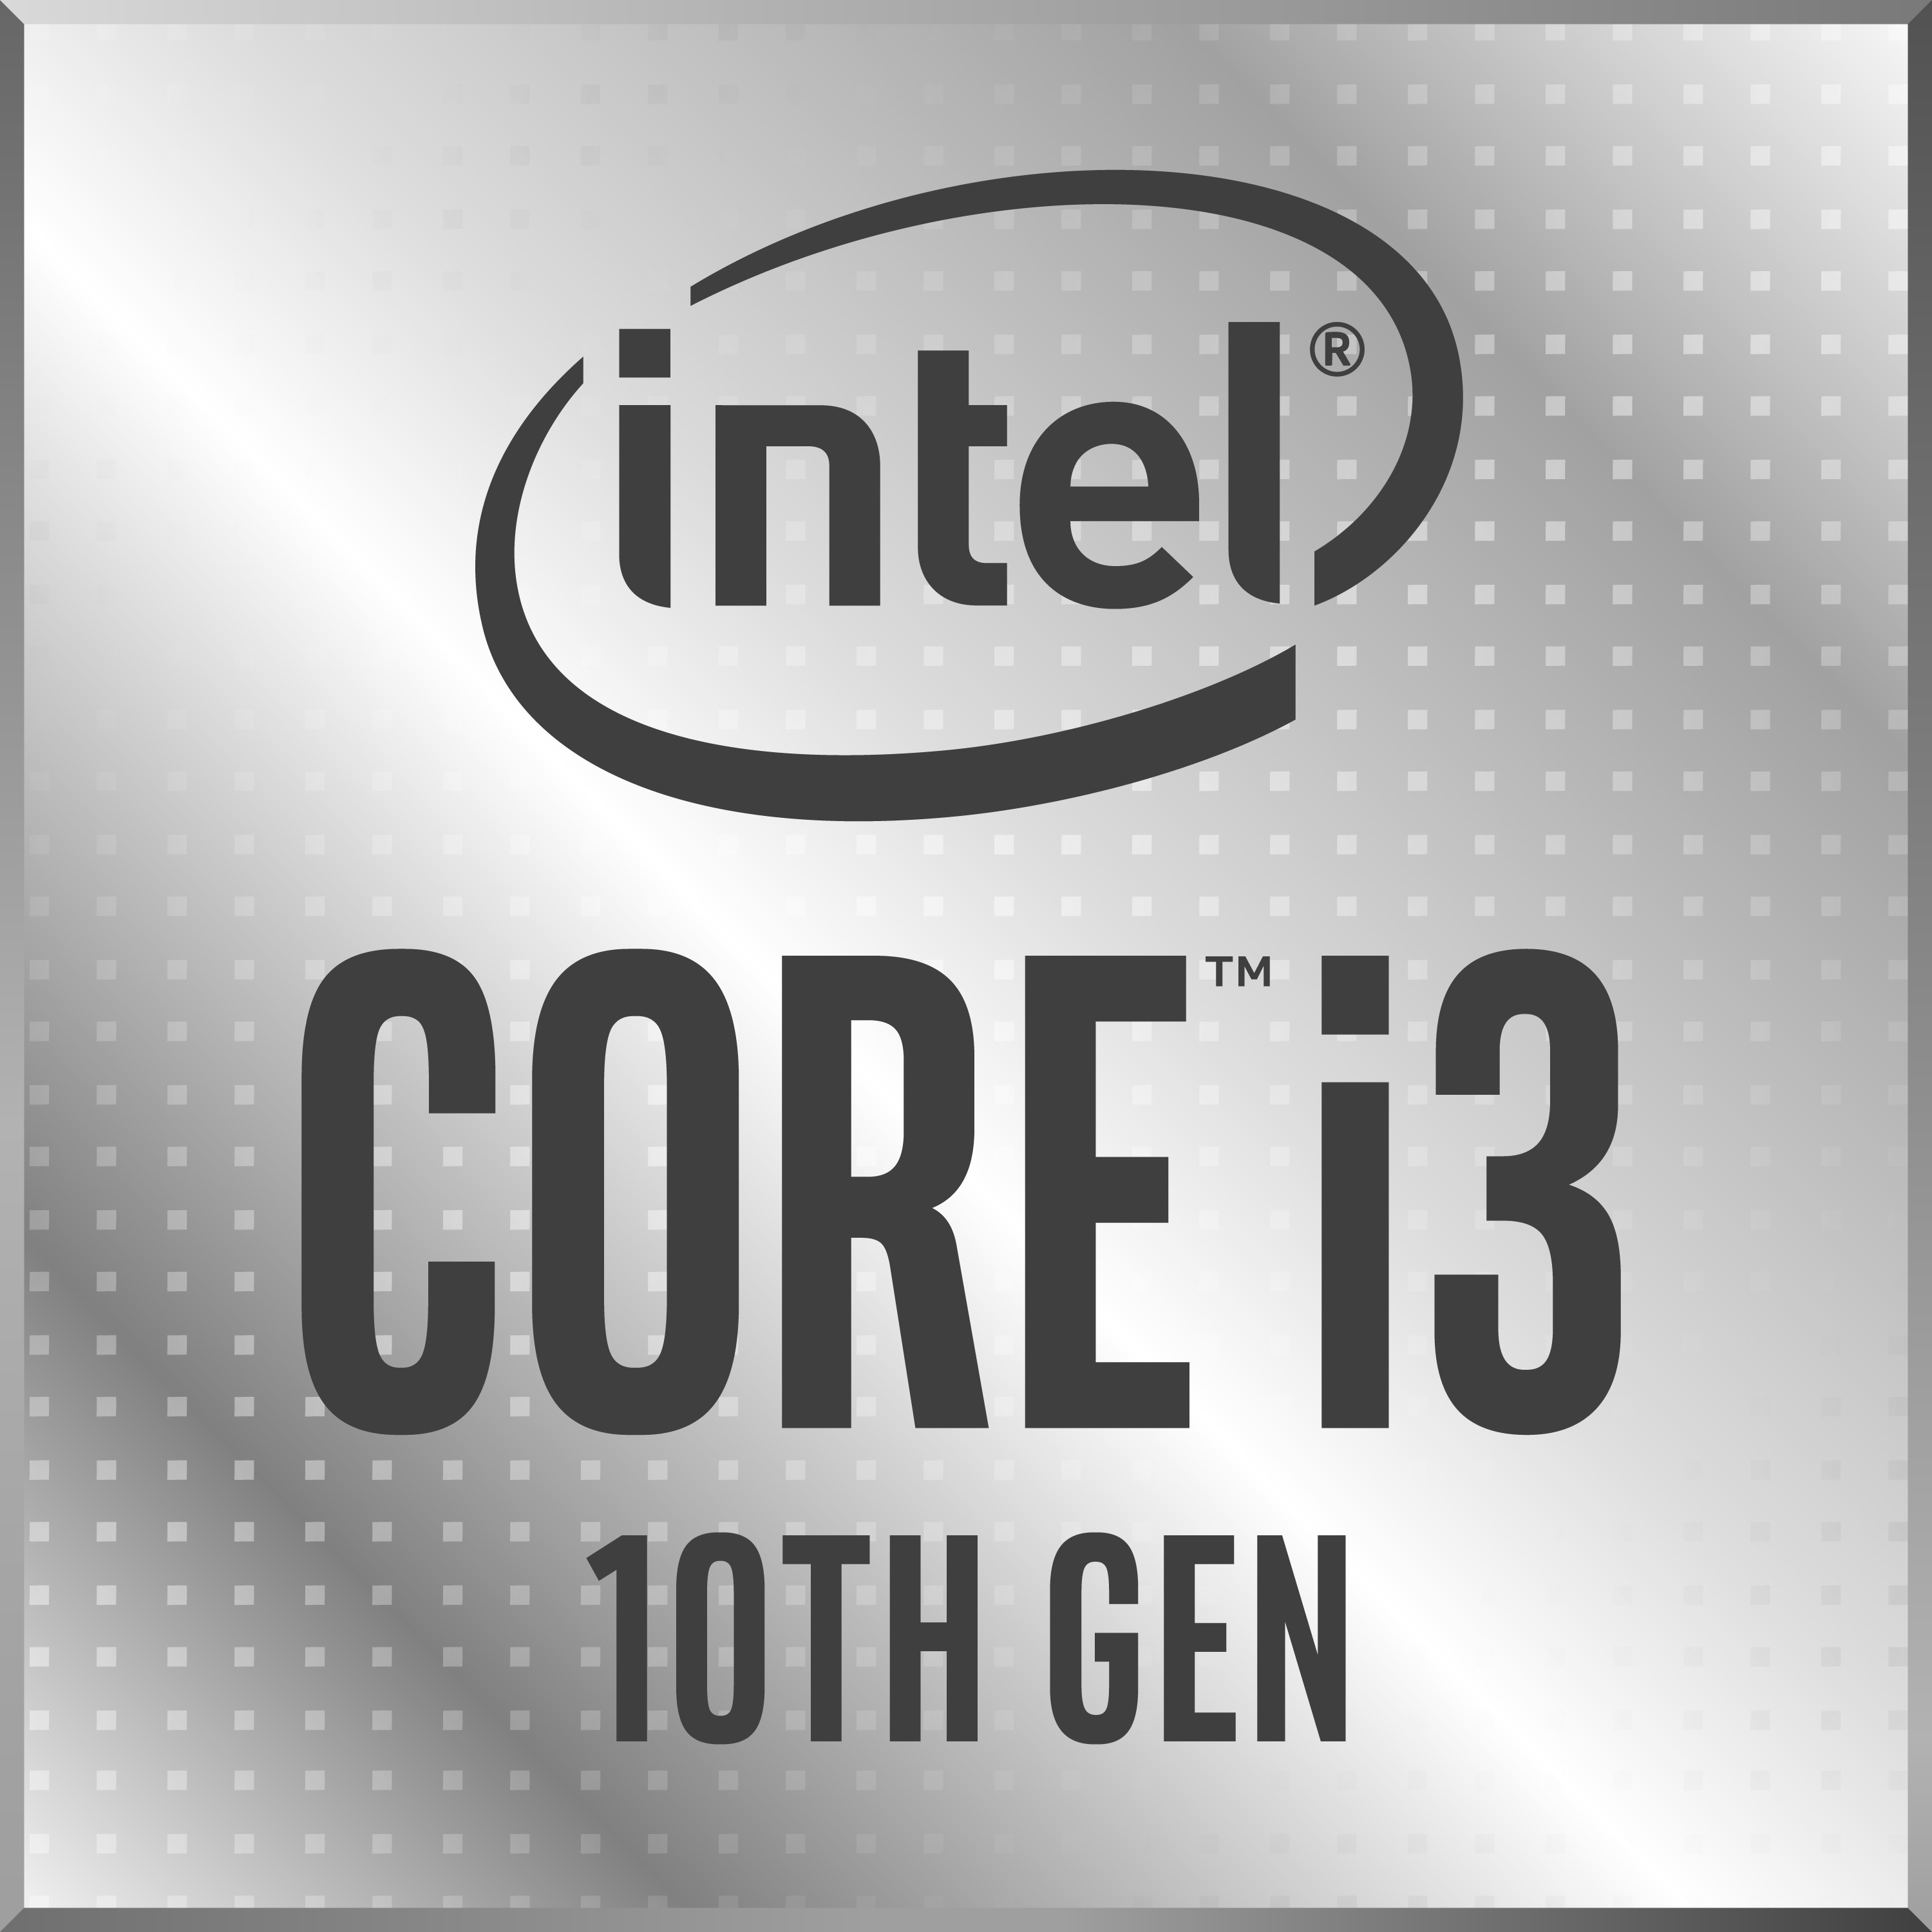 https://www.notebookcheck.net/fileadmin/Notebooks/Intel/Ice_Lake/Intel_10th_Gen_Core_i3_badge.jpg